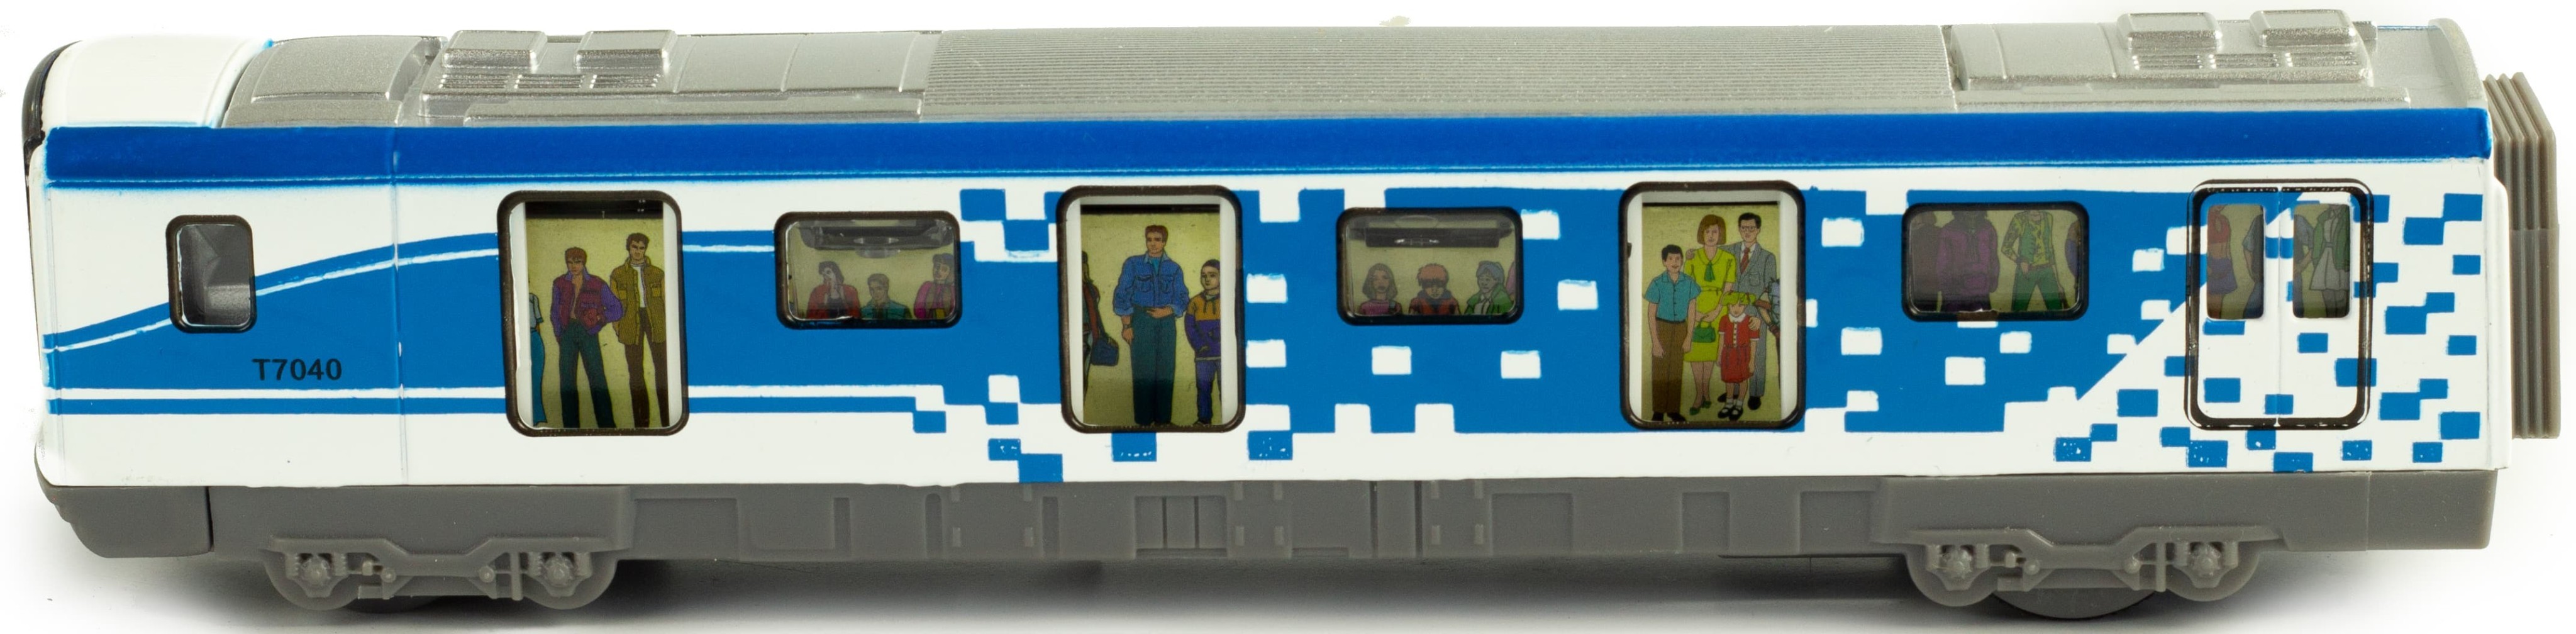 Металлические вагоны Метро 1:43 Sonic City Subway 7040, 18 см. (открываются двери, звук, свет) / Синий